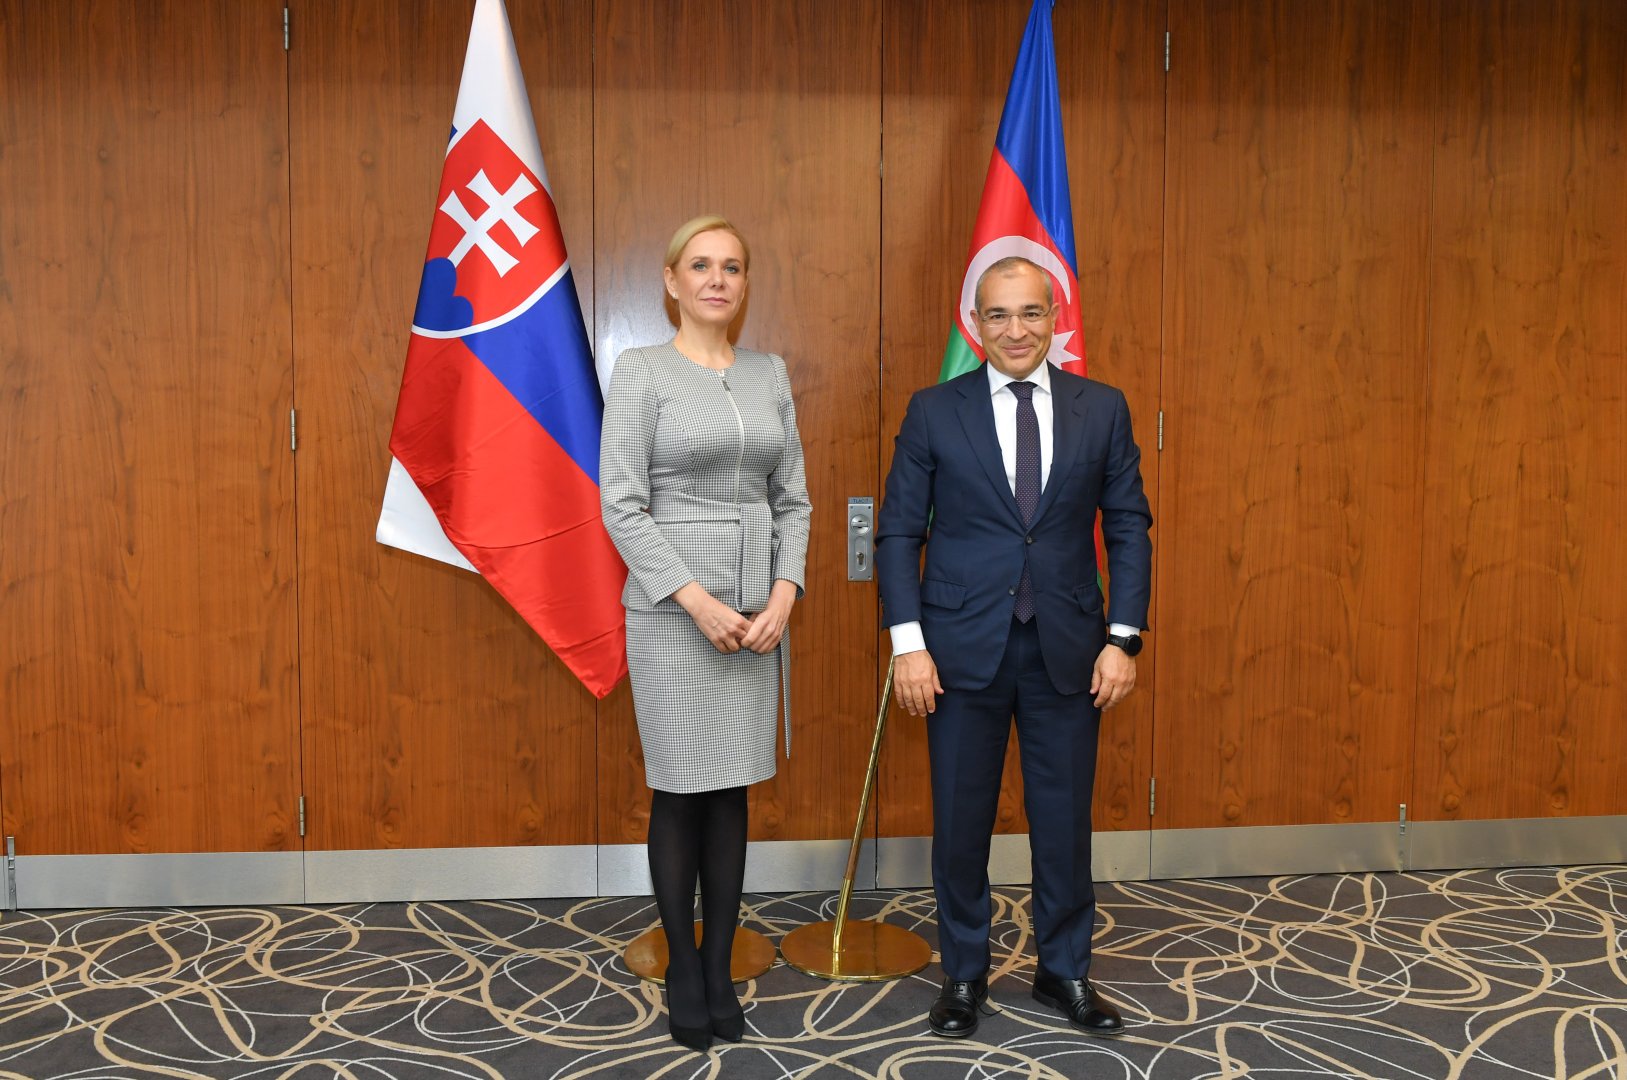 Обсуждены возможности присоединения Словакии к энергетическим проектам с участием Азербайджана (ФОТО)